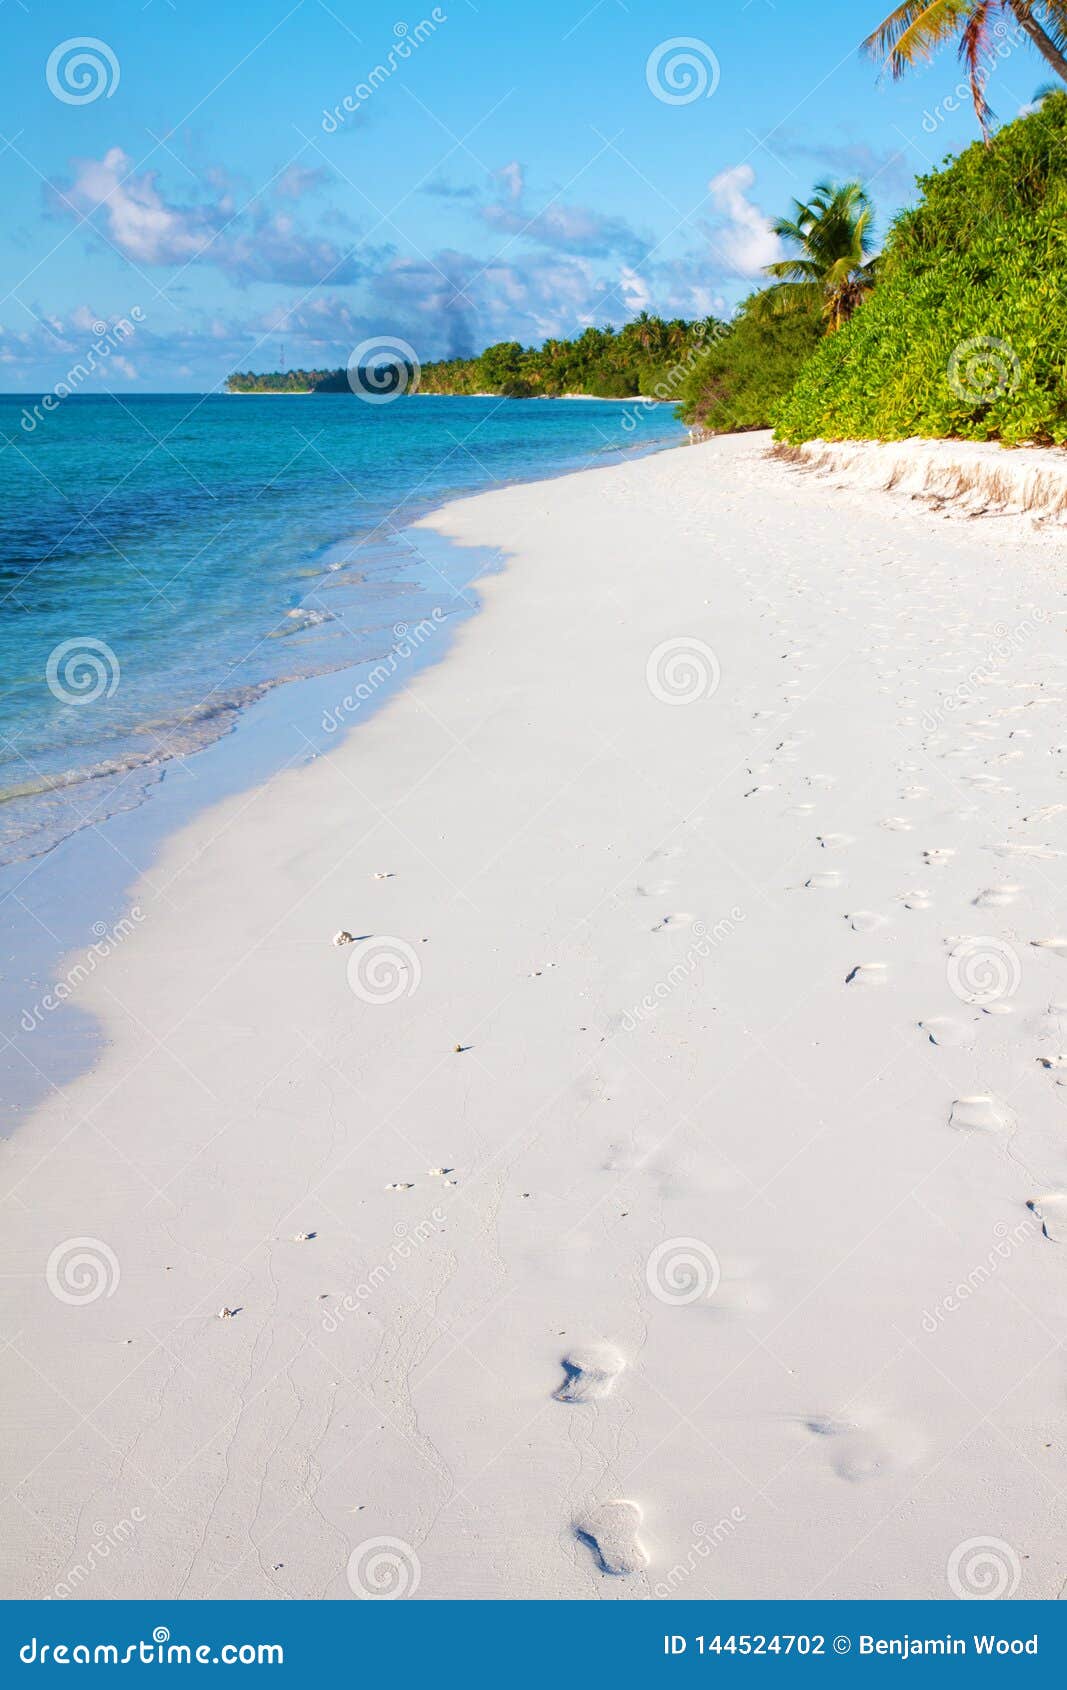 dhigurah beach